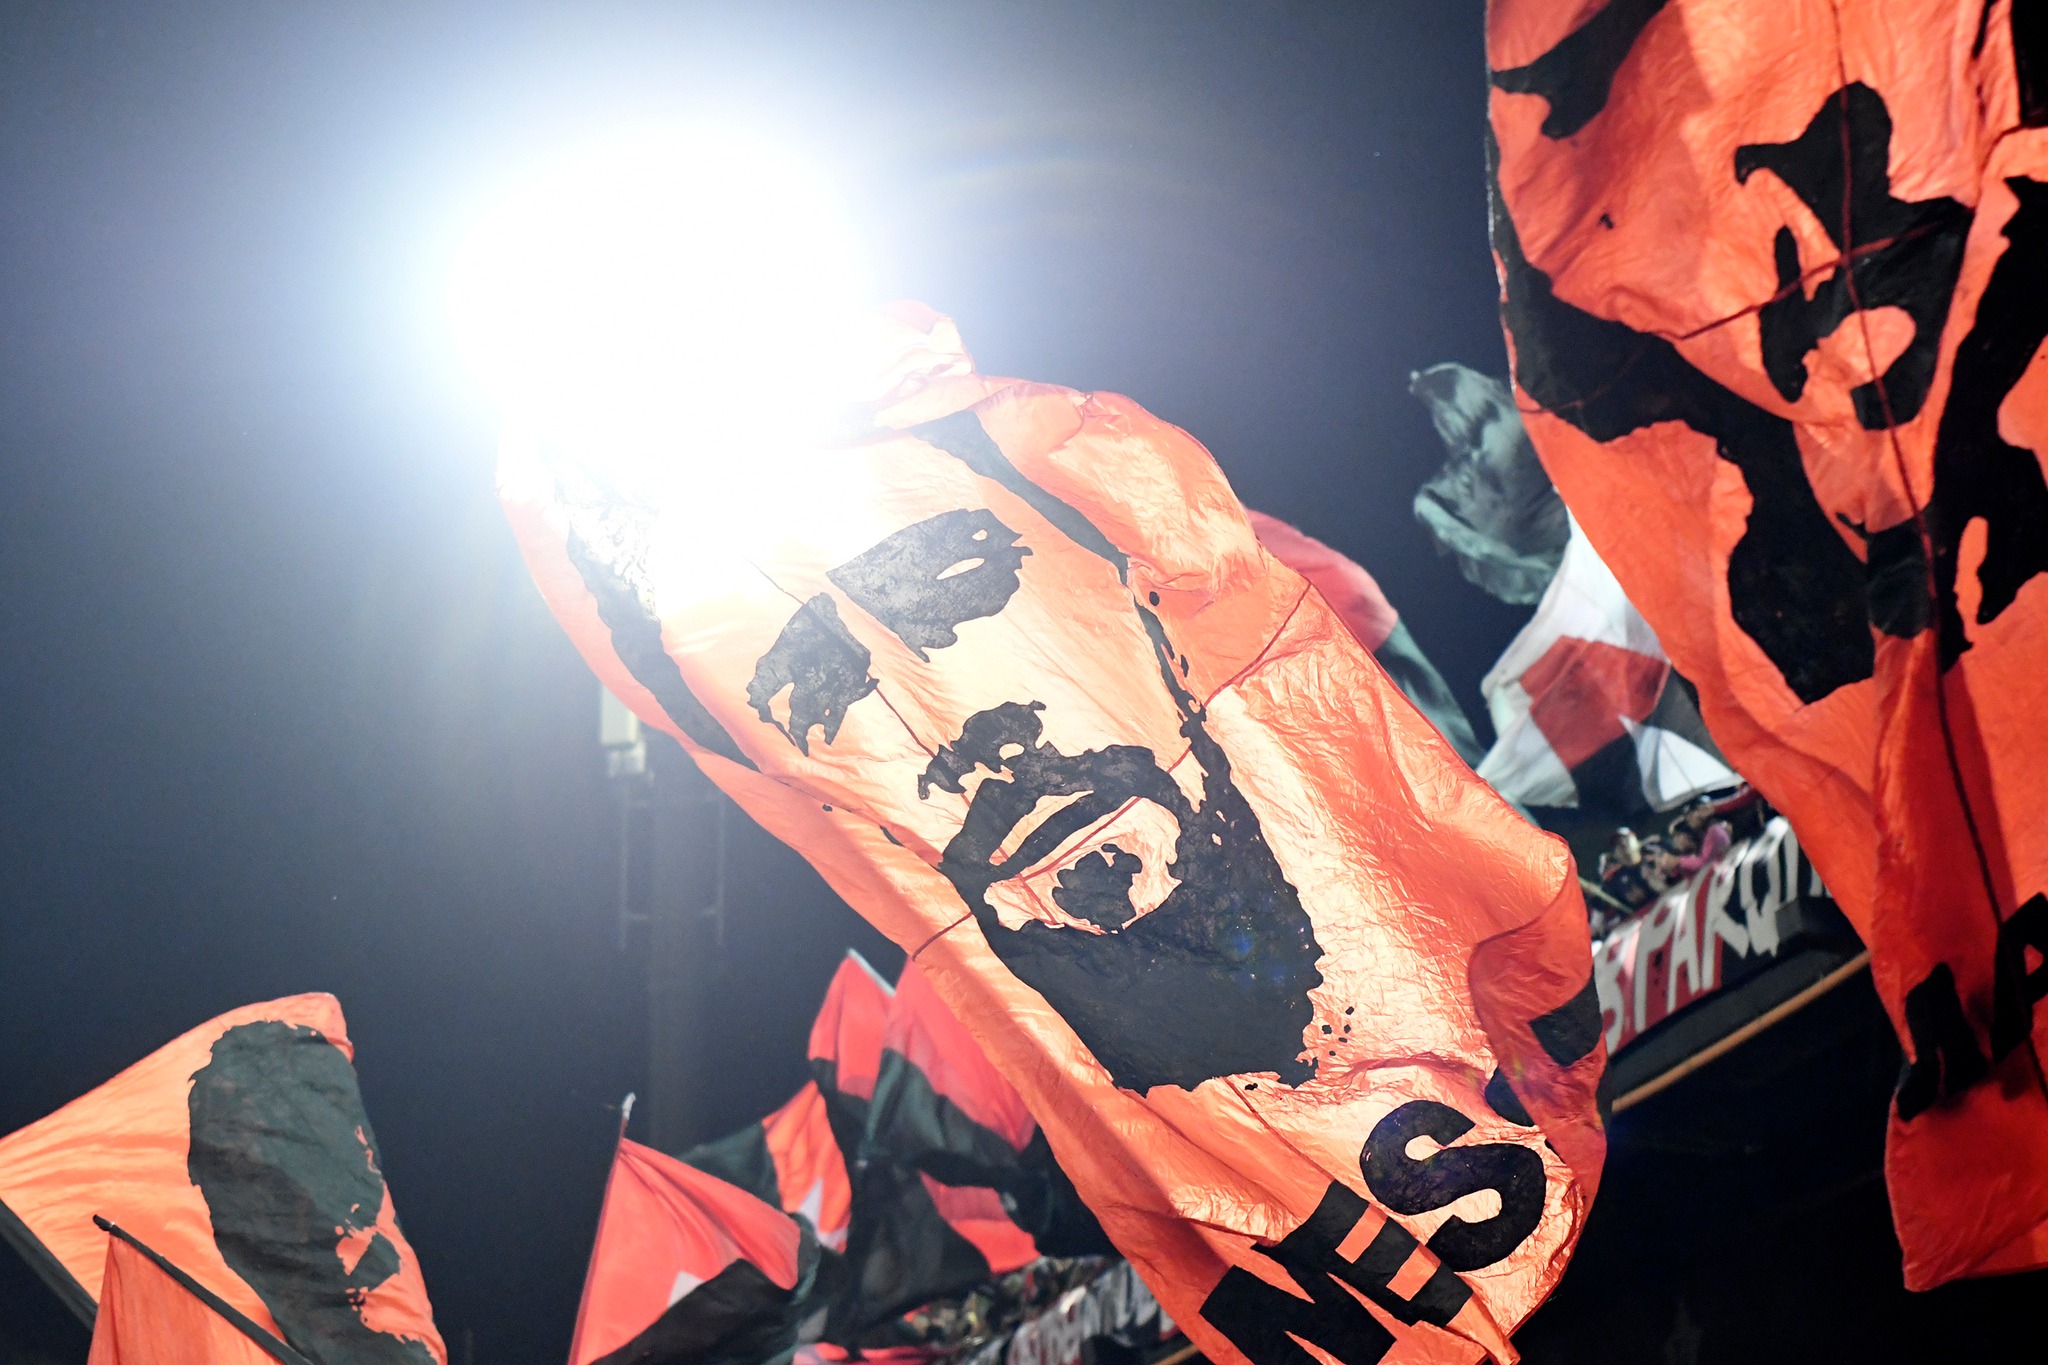 Una banderola flamea con el rostro y apellido de Messi en el estadio al que concurría de chico para ver a Newell's